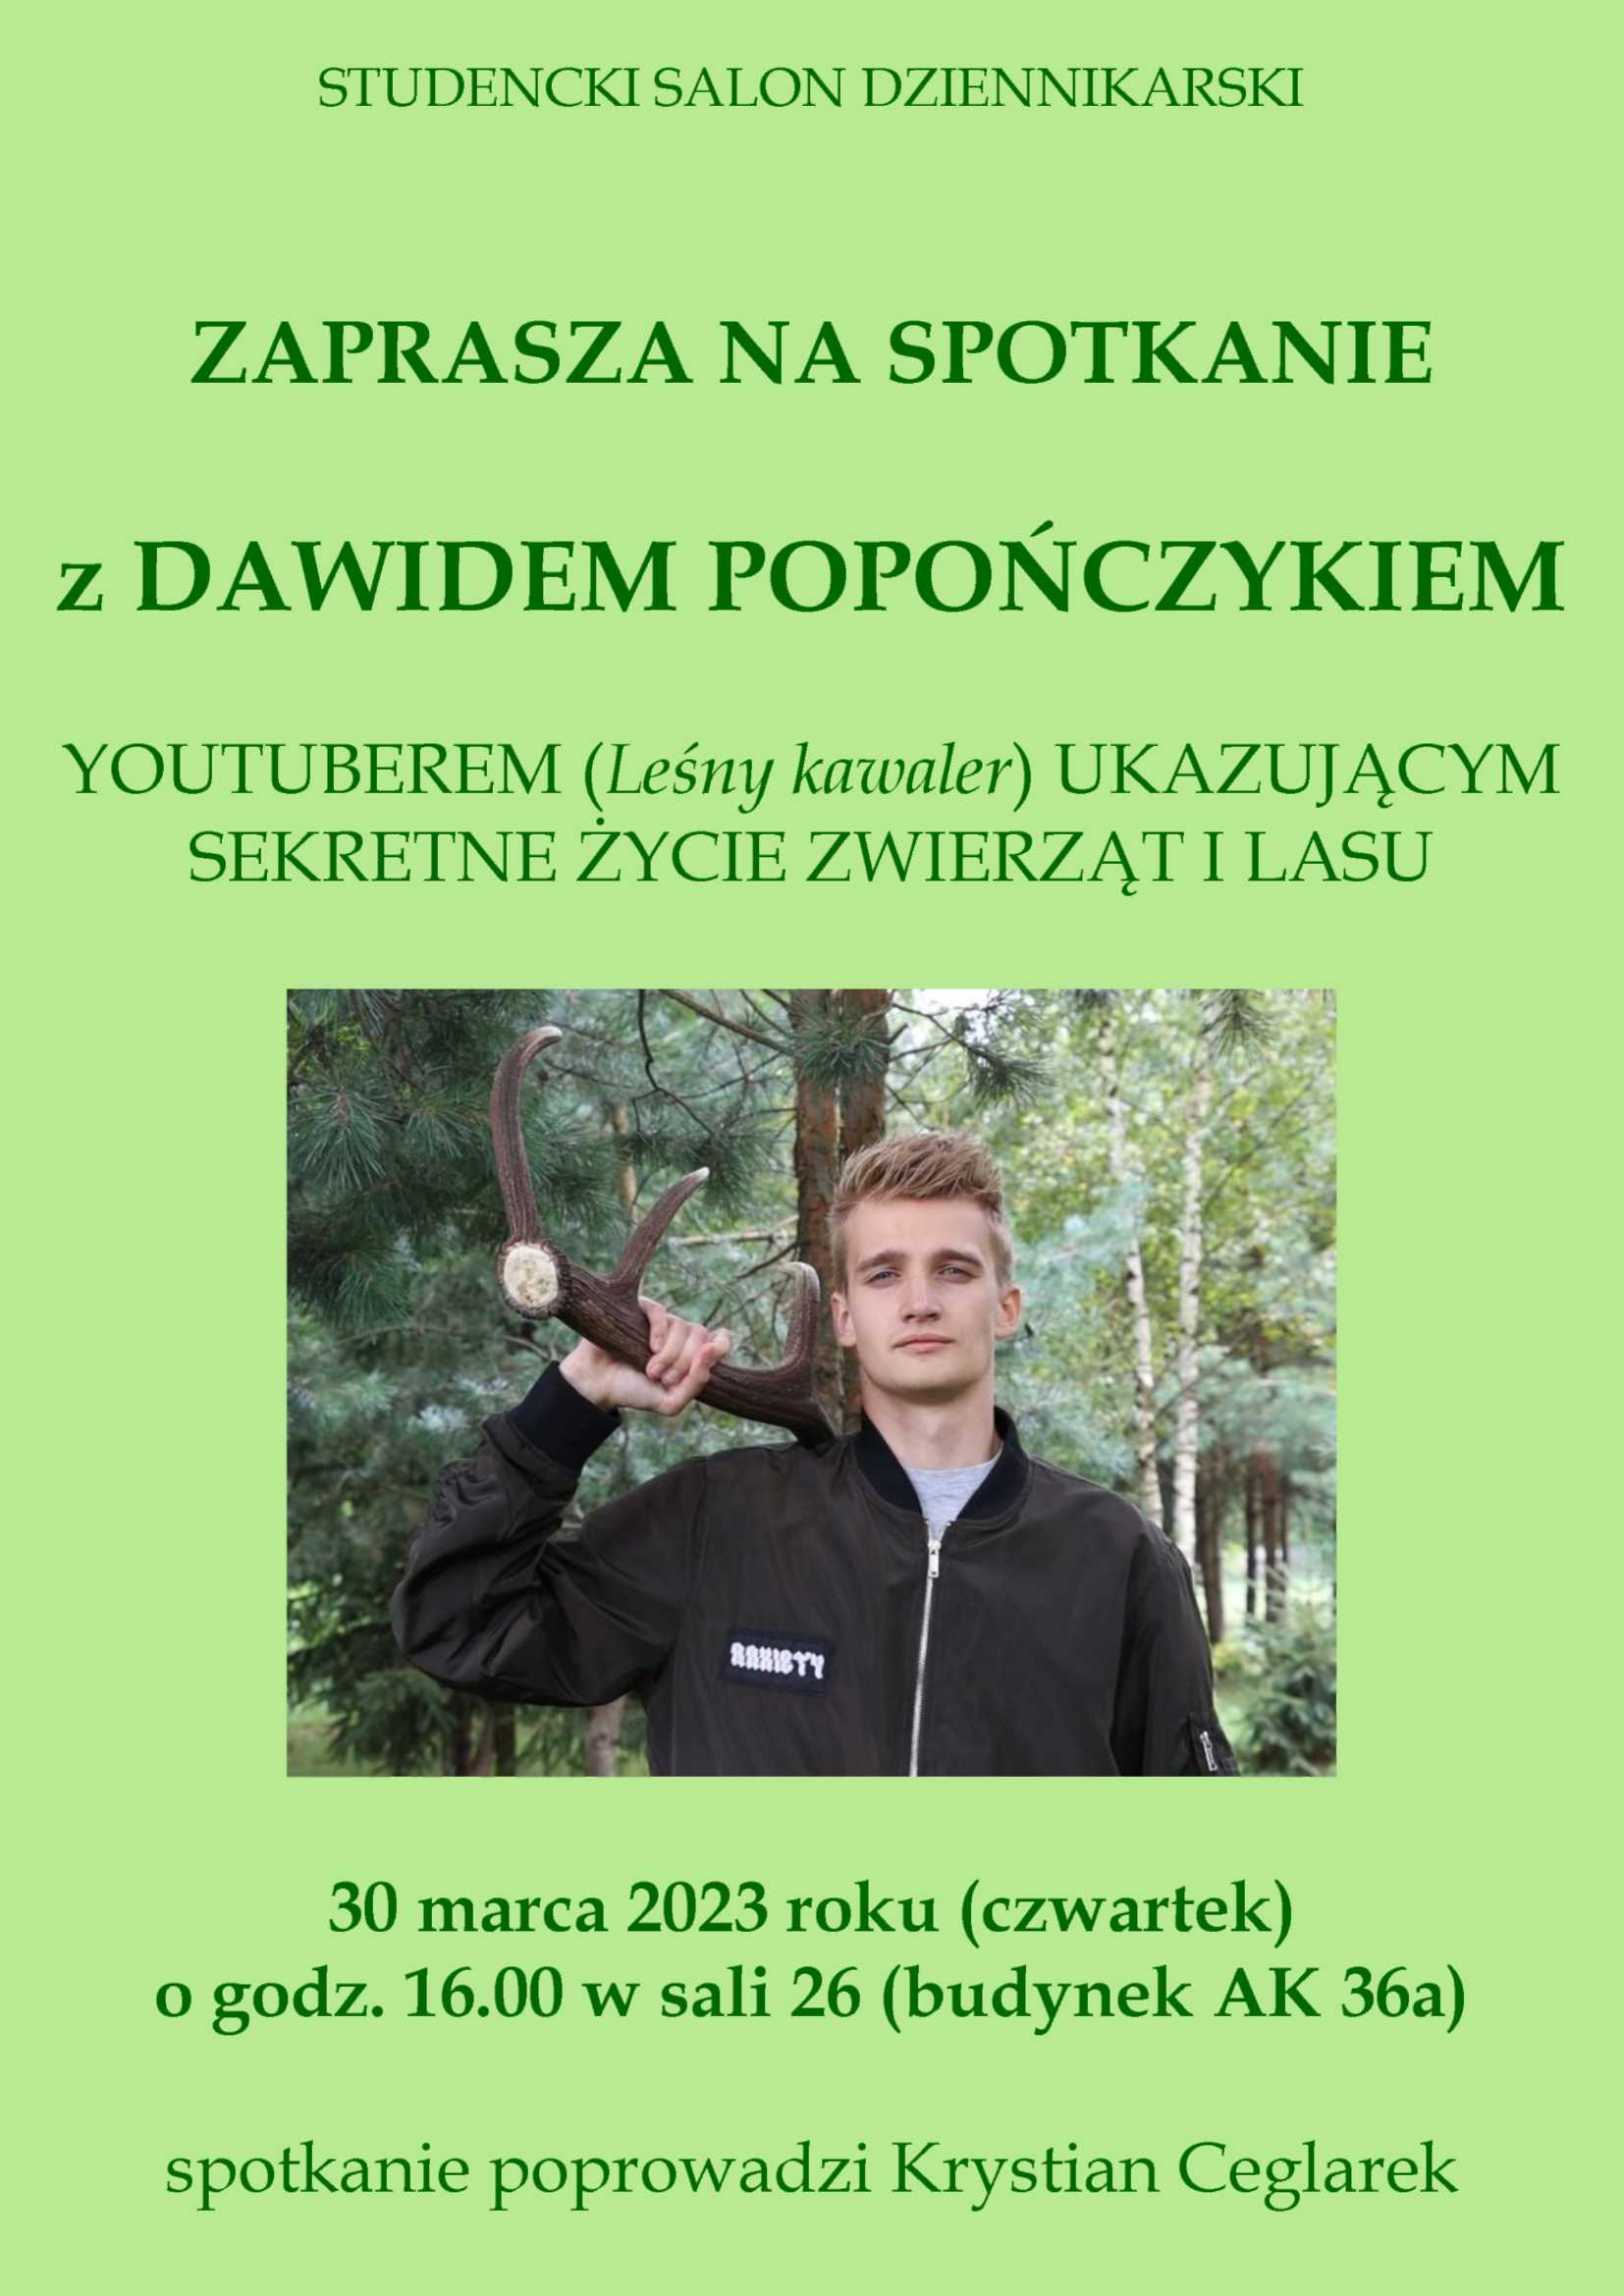 Plakat informujący o spotkaniu z Dawidem Popończykiem